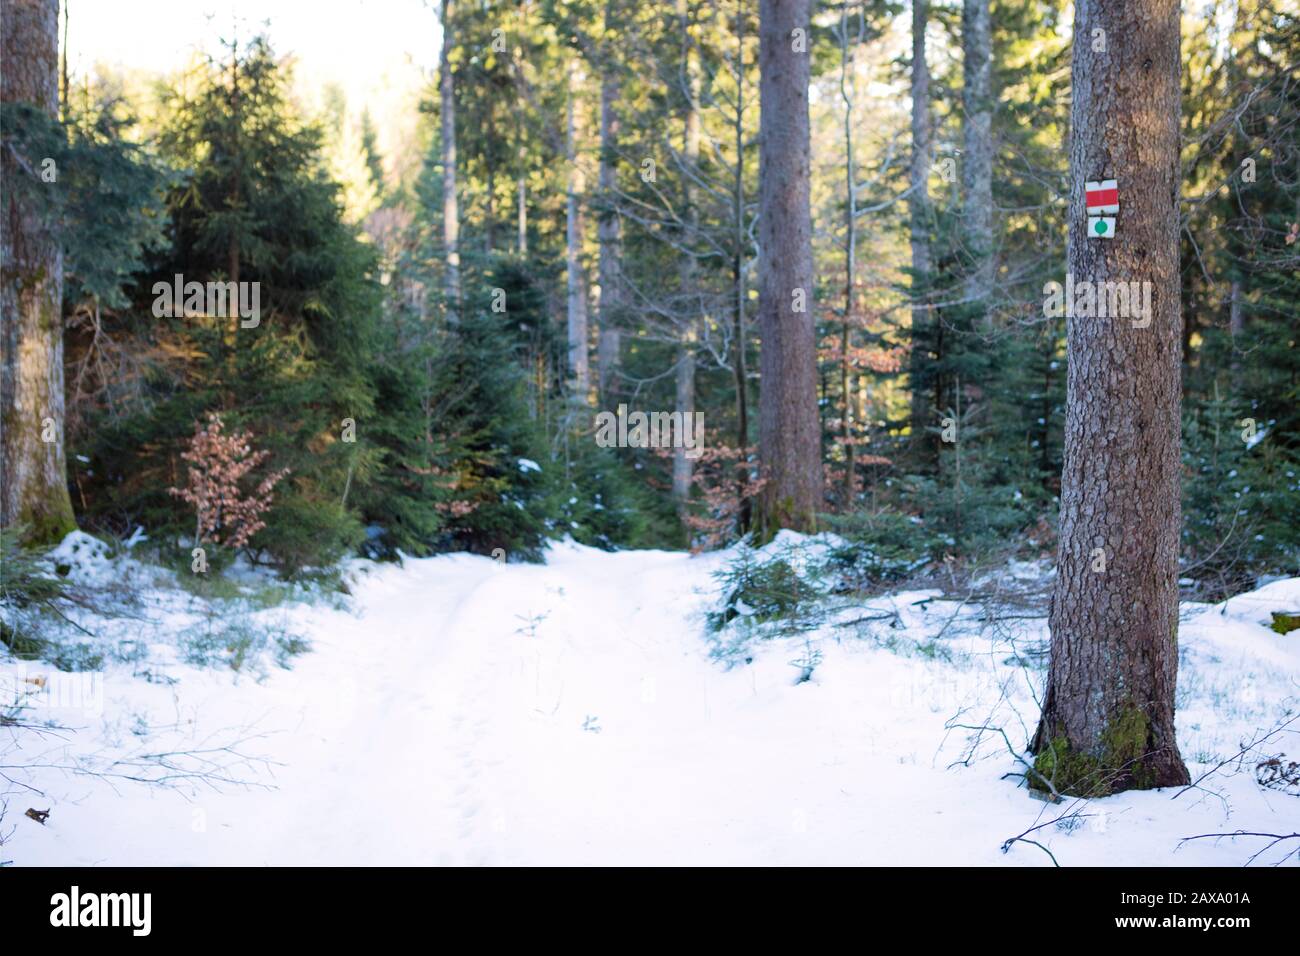 Baumstamm mit Wegemarkierung im verschneiten Wald. Weg in das mit weißem Schnee bedeckte Holz. Nadelbäume im Sonnenlicht. Schwarzwaldlandschaft, Mounta Stockfoto